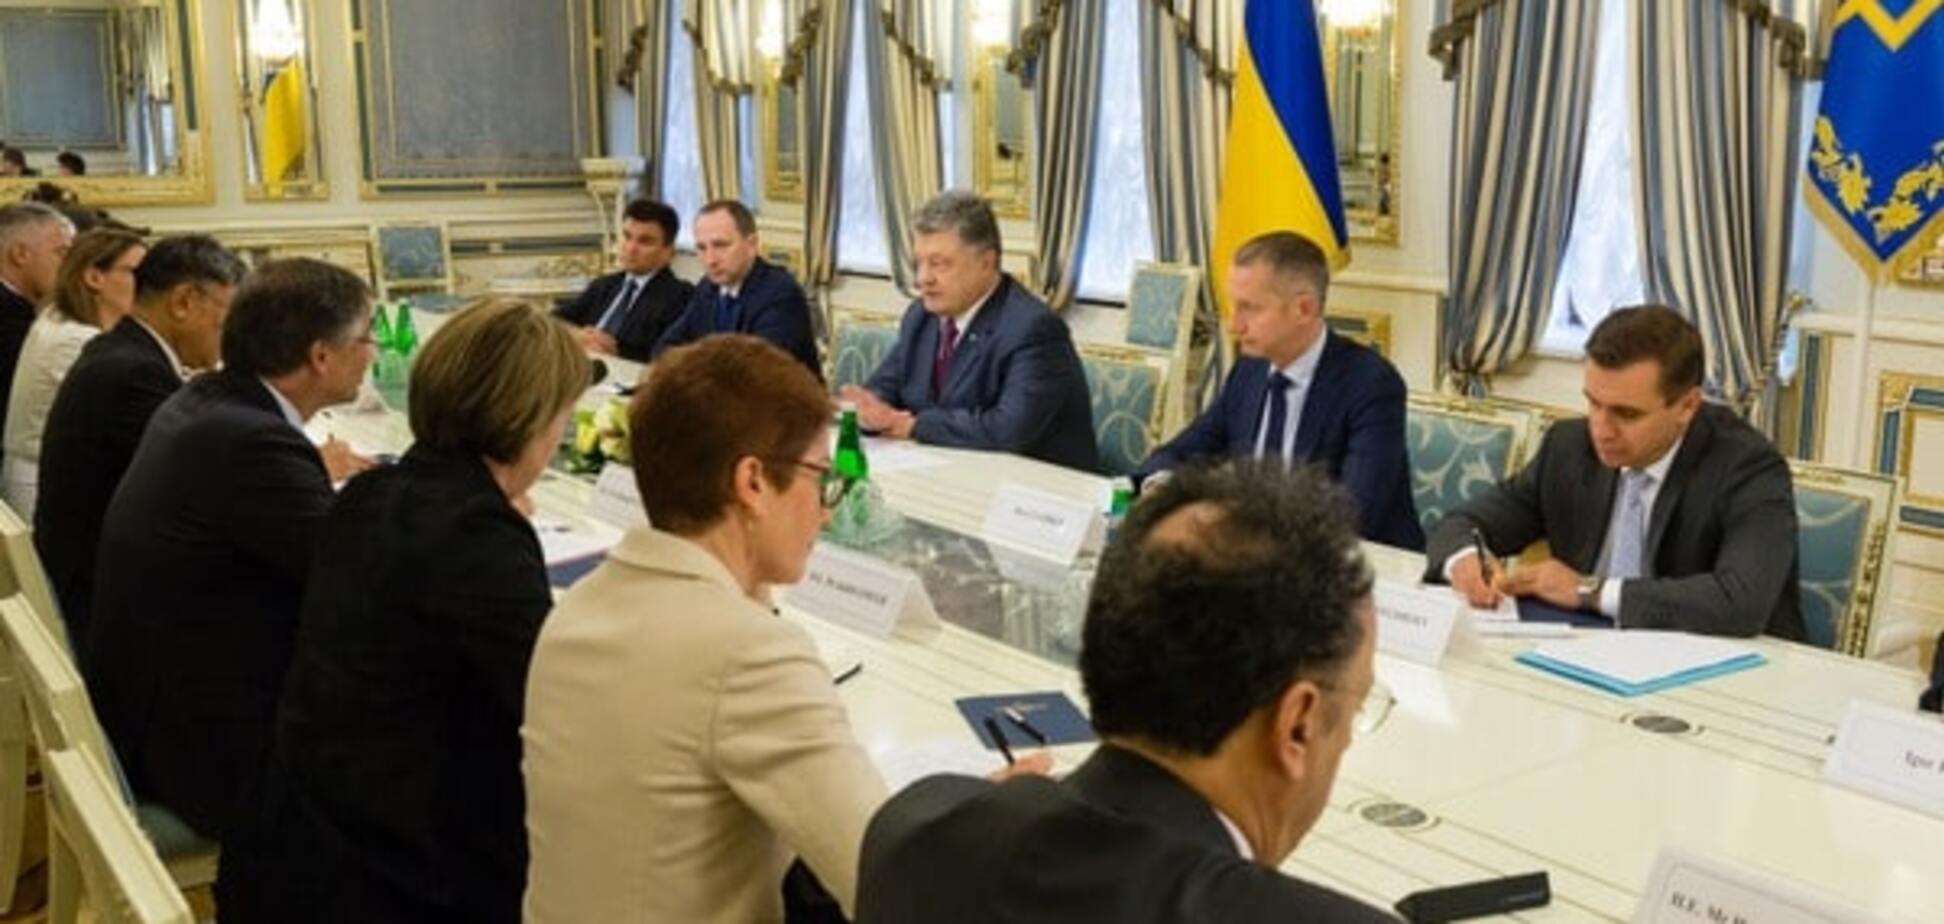 Обсудили конфликт с Россией: Порошенко встретился с послами стран 'Большой семерки' и ЕС